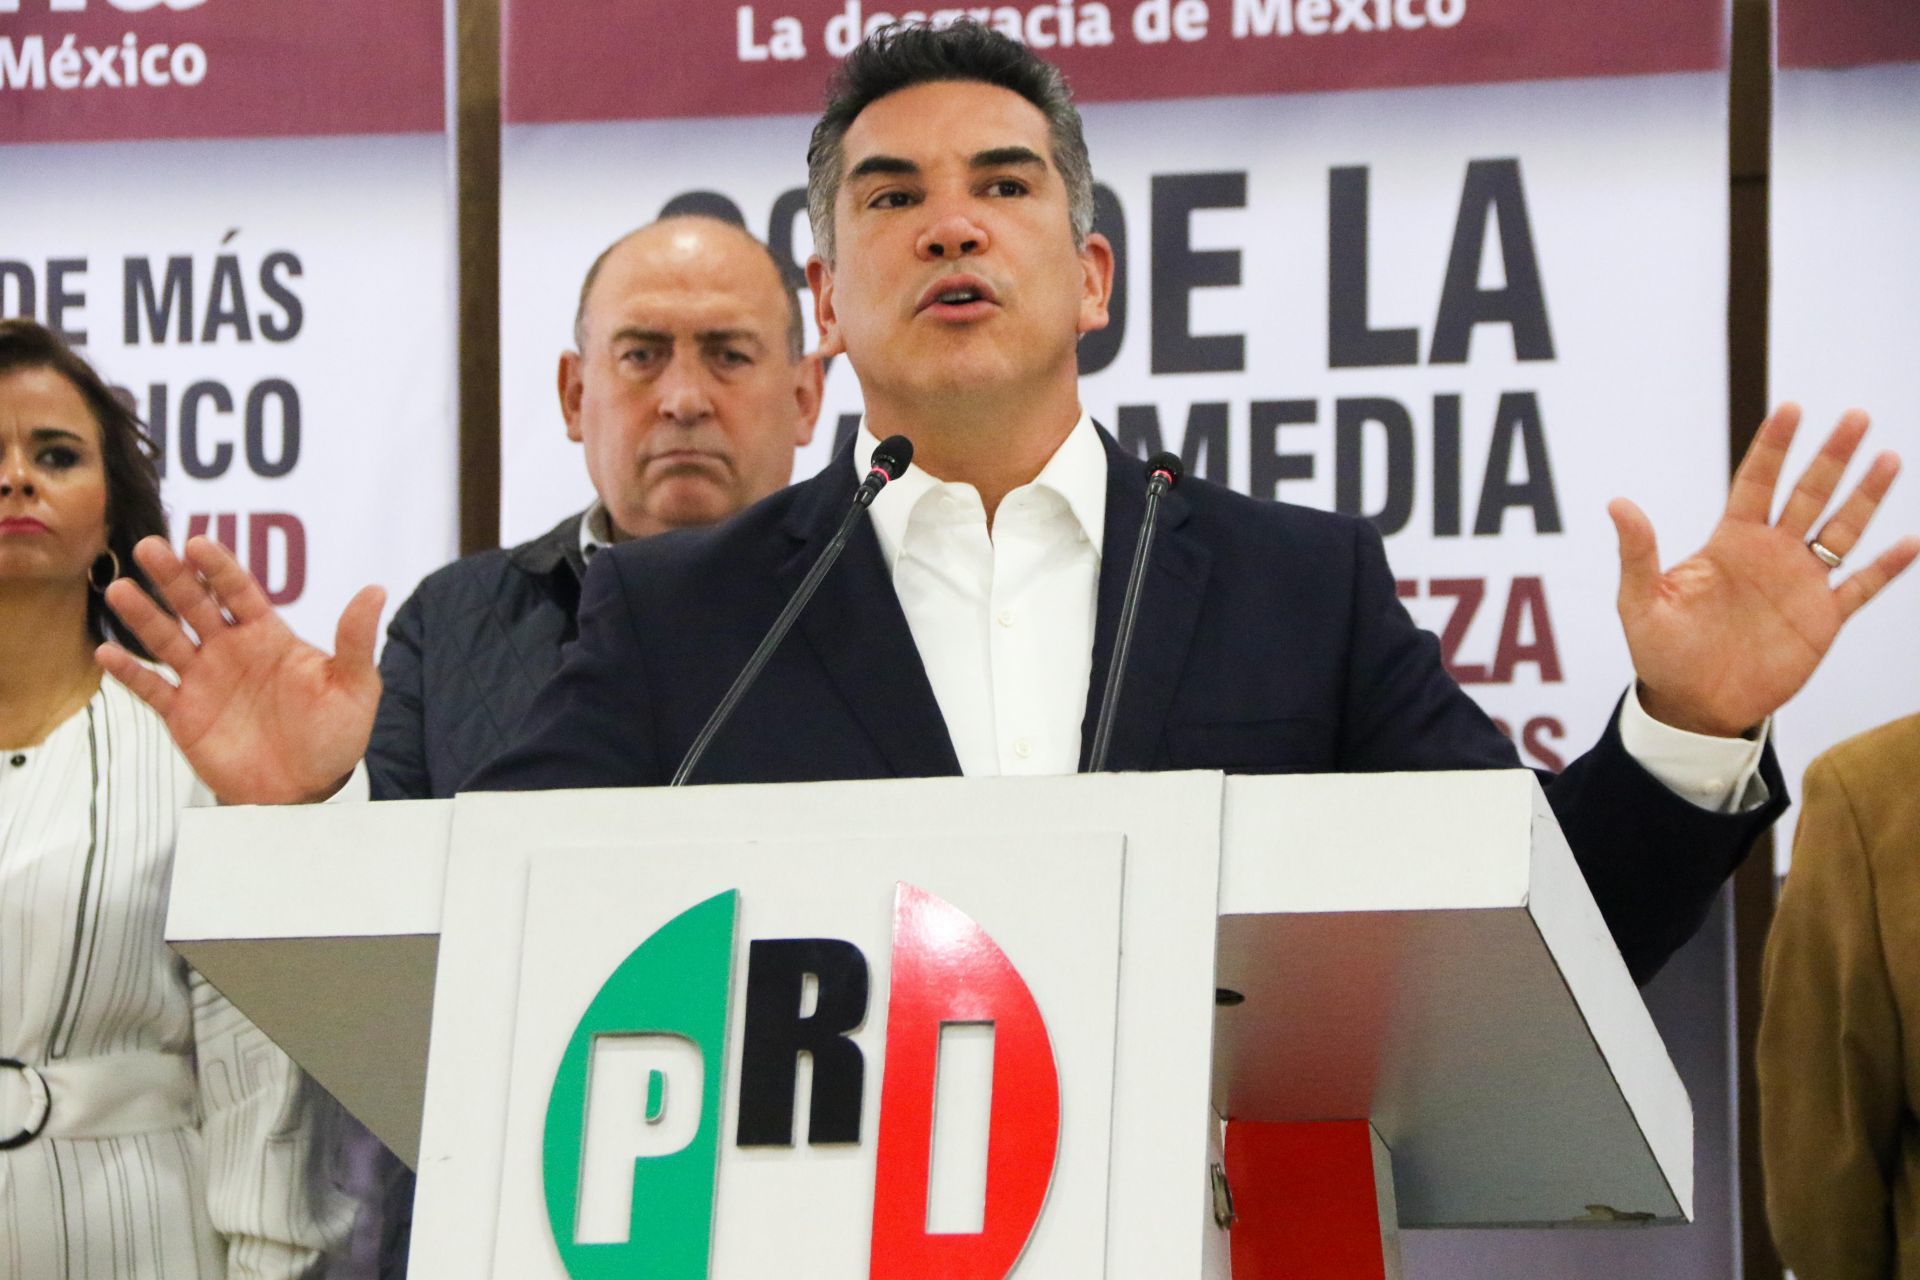 Nuevo audio de Alito Moreno revela presión a empresarios de México